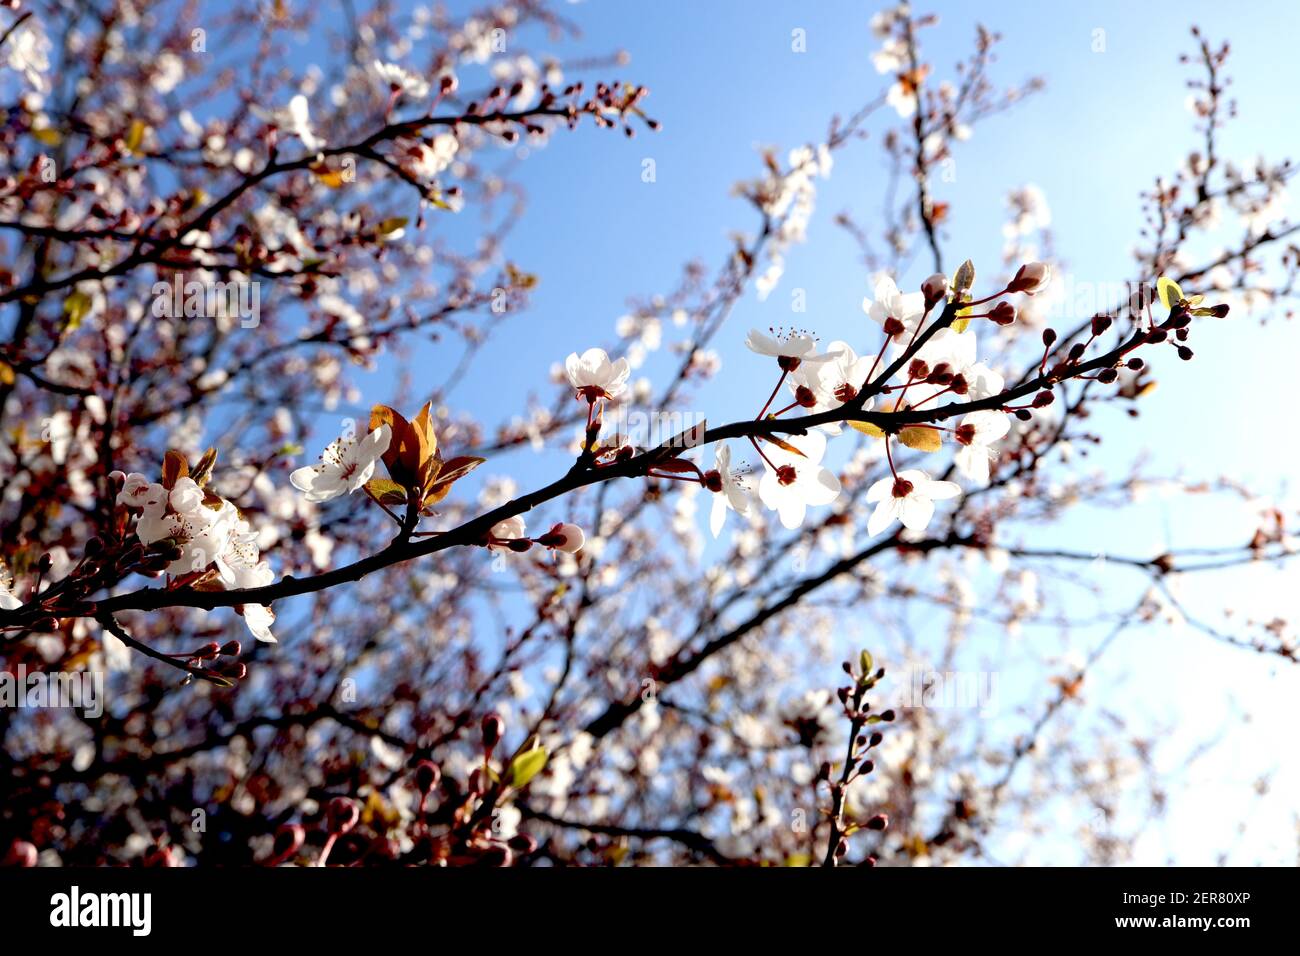 Prunus cerasifera prugna di ciliegia – piccoli fiori bianchi a forma di ciotola con molte stampigliature, steli di fiori rossi, foglie da verdi a marroni, febbraio, Inghilterra, Regno Unito Foto Stock